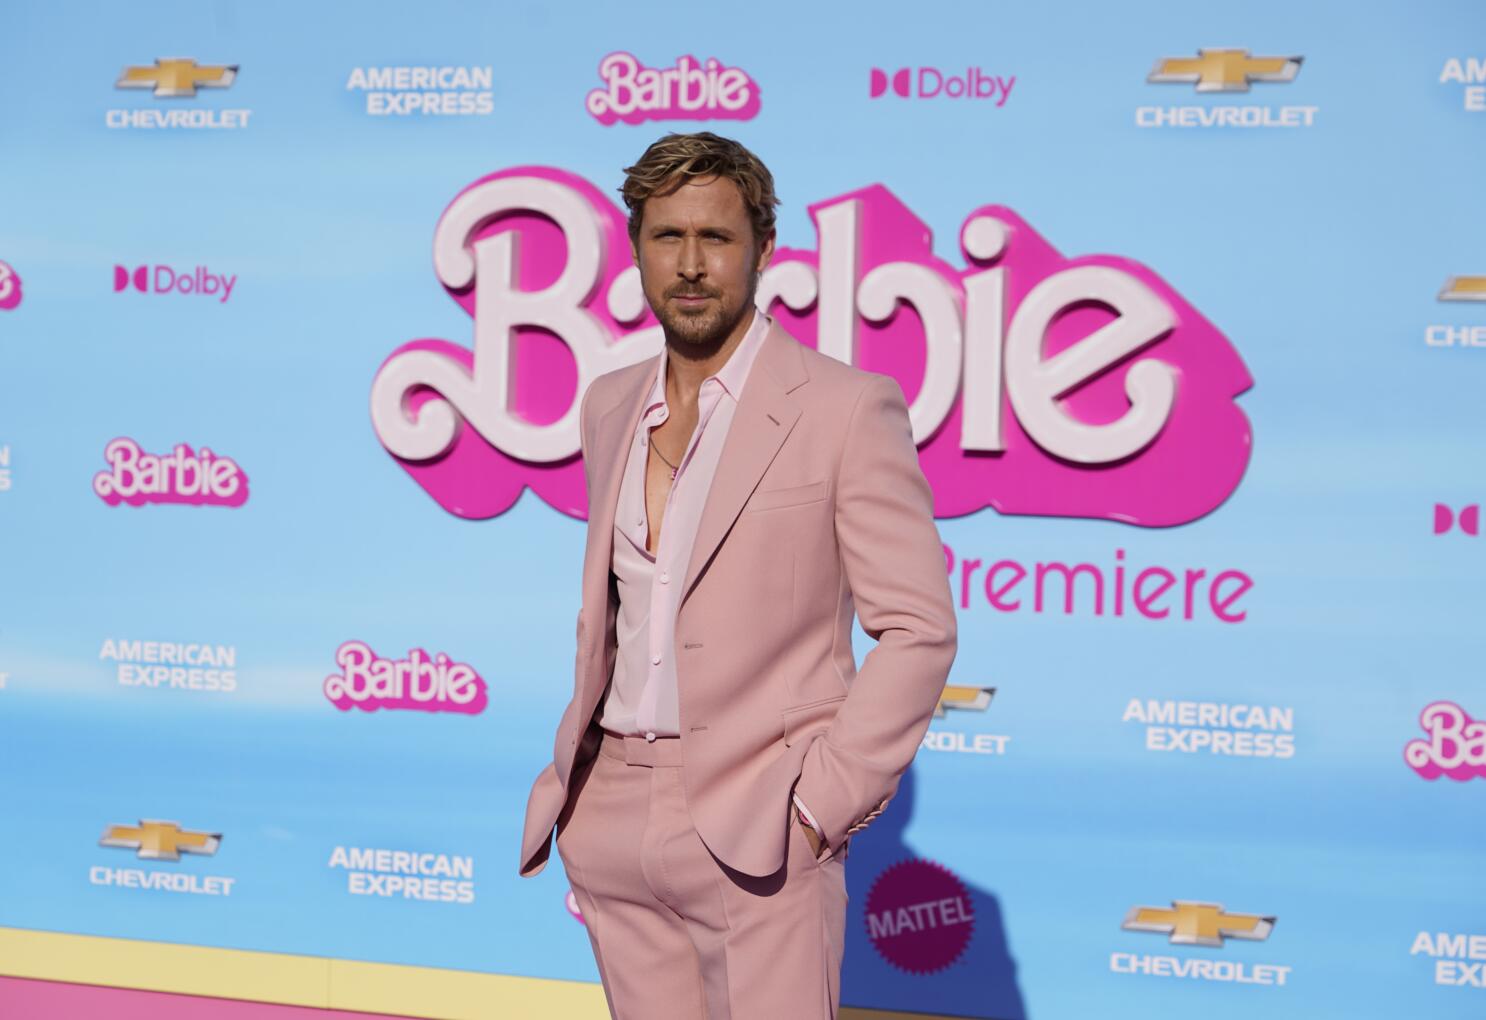 Barbie The Movie - Ryan Gosling as Ken (I'm Just Ken) [Custom] : r/Barbie